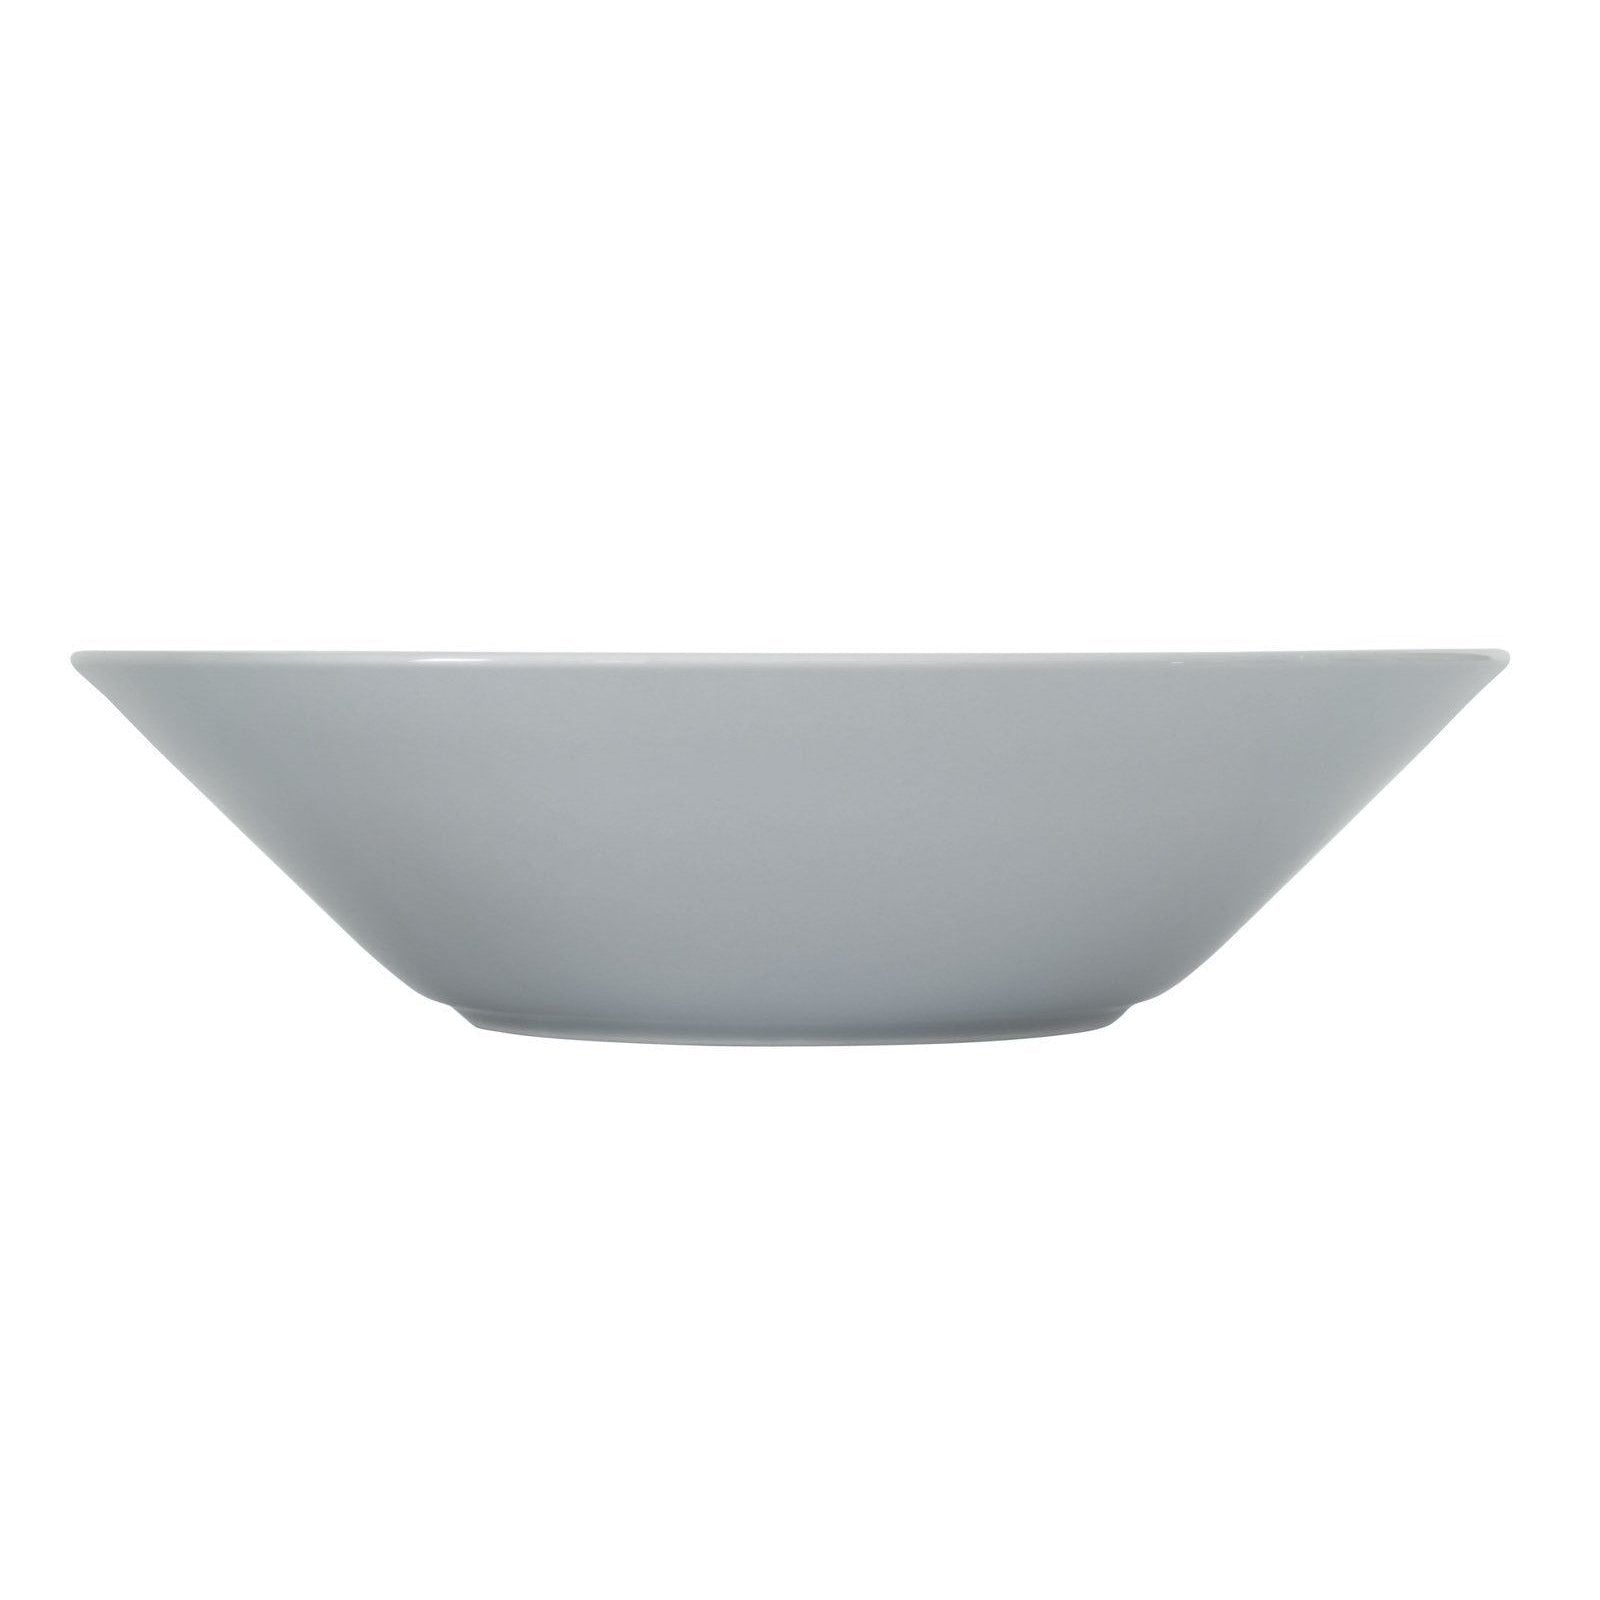 Iittala Teema Plate Pearl Gray, 21 cm